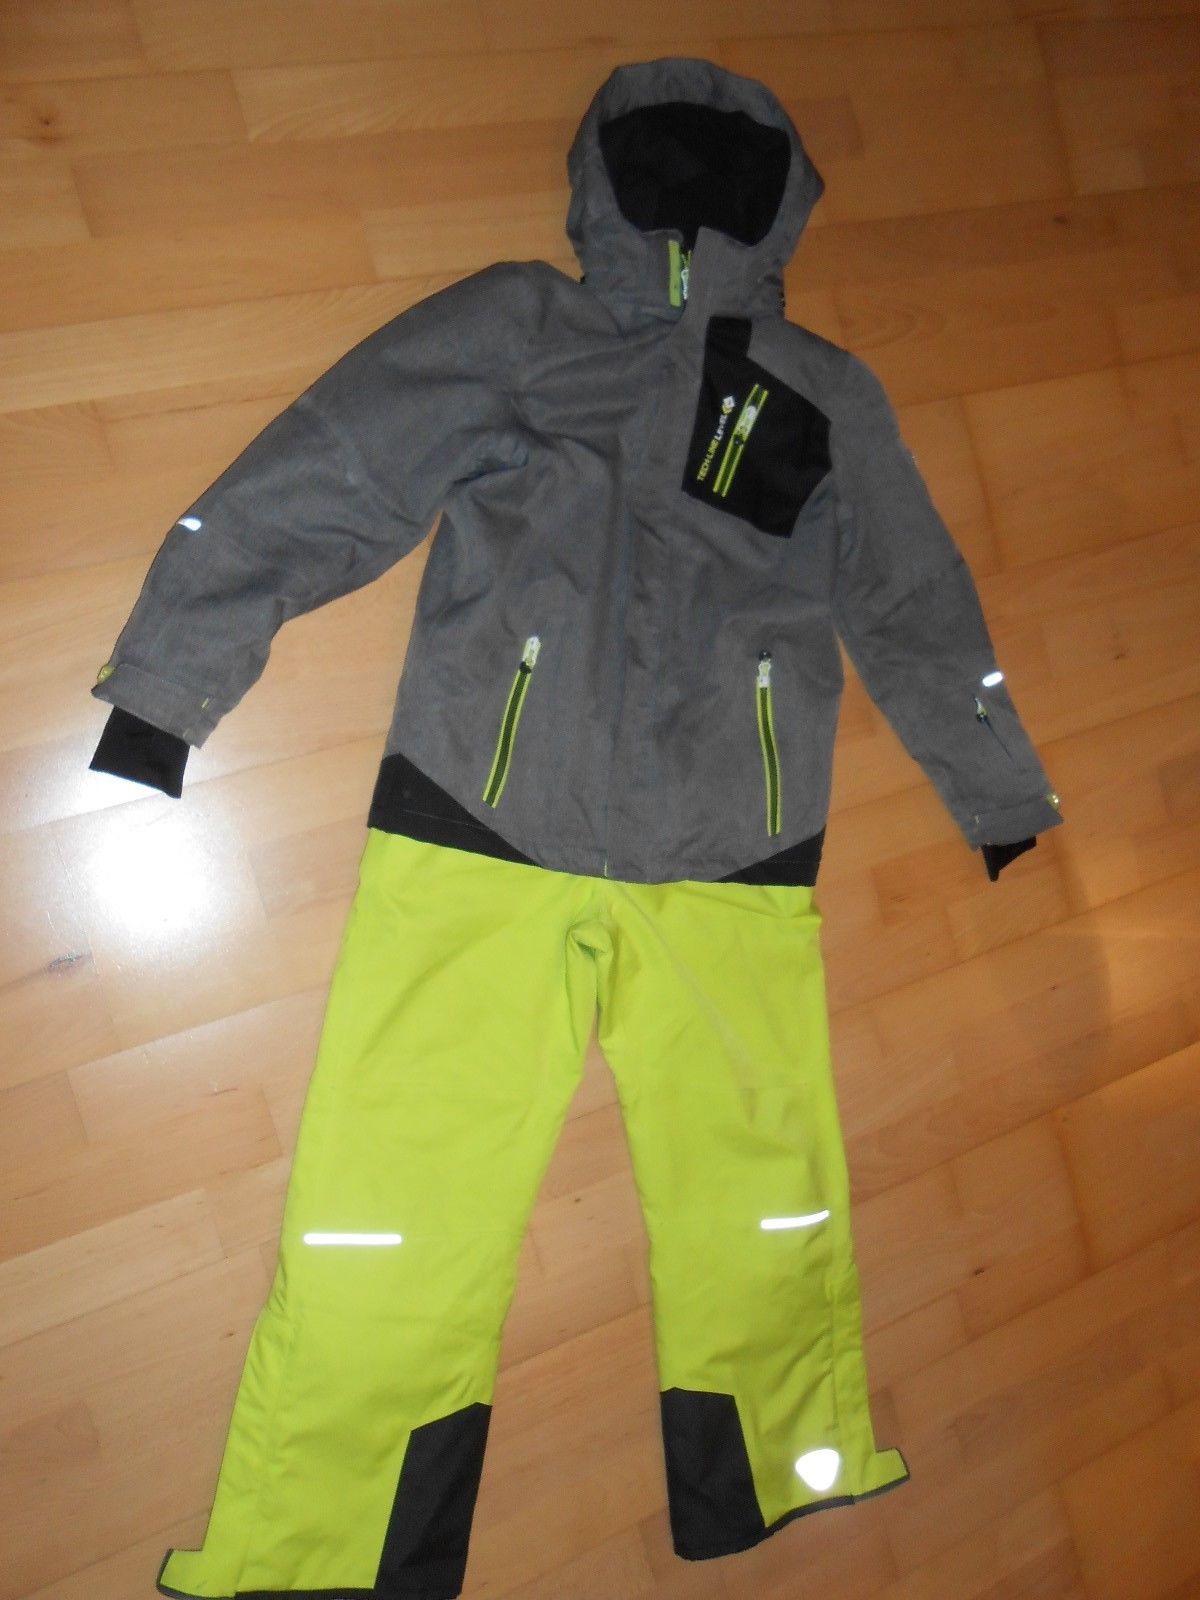 Jungen Skianzug Größe 152 von Killtec, graue Skijacke und gelb/grüne Hose